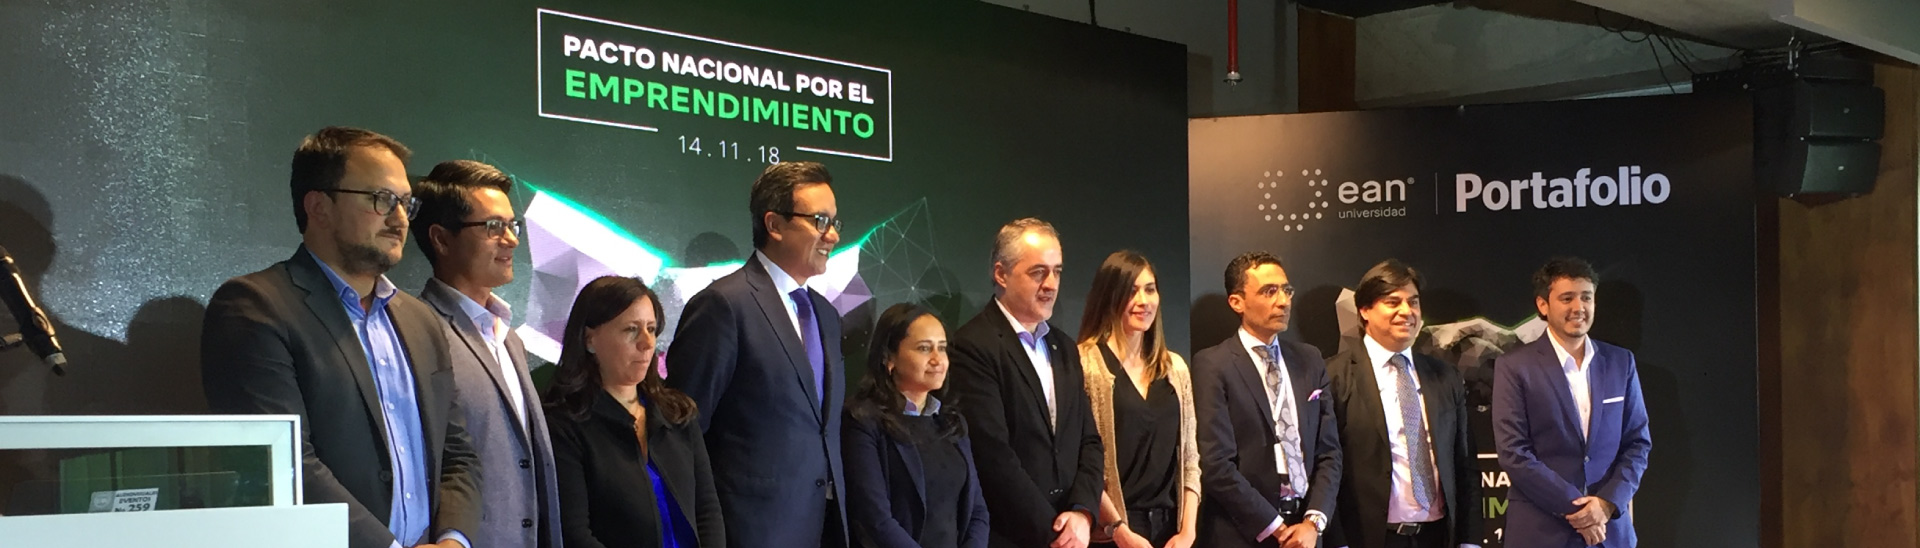 Universidad Ean y Portafolio firman el pacto nacional por el emprendimiento en Colombia